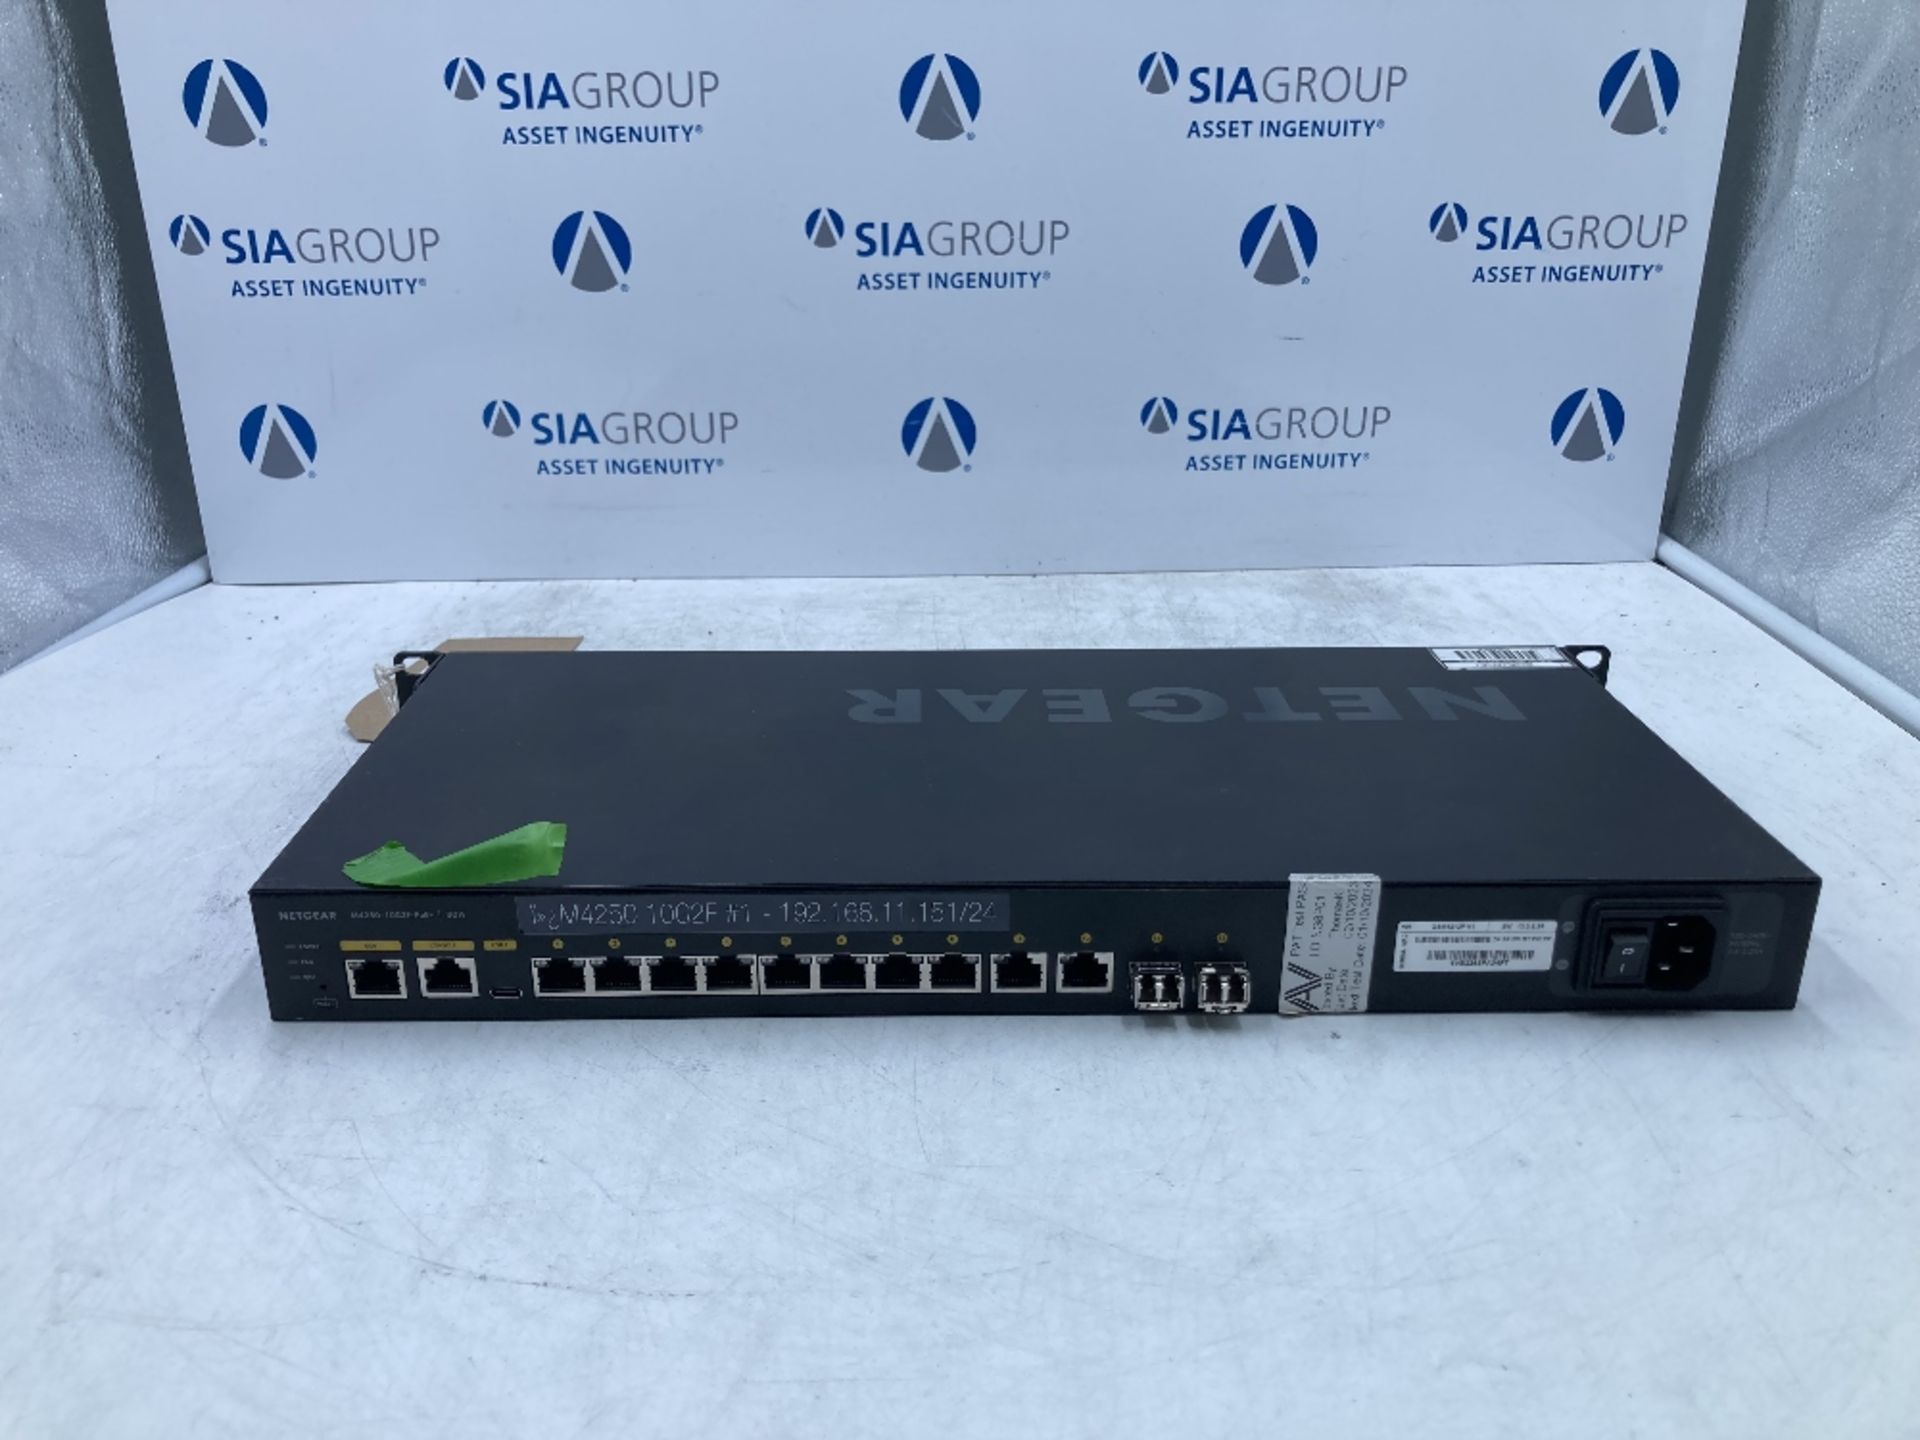 Netgear AV Line M4250-10G2F - 10 Port Gigabit PoE+ Managed Network Switch - Image 3 of 5